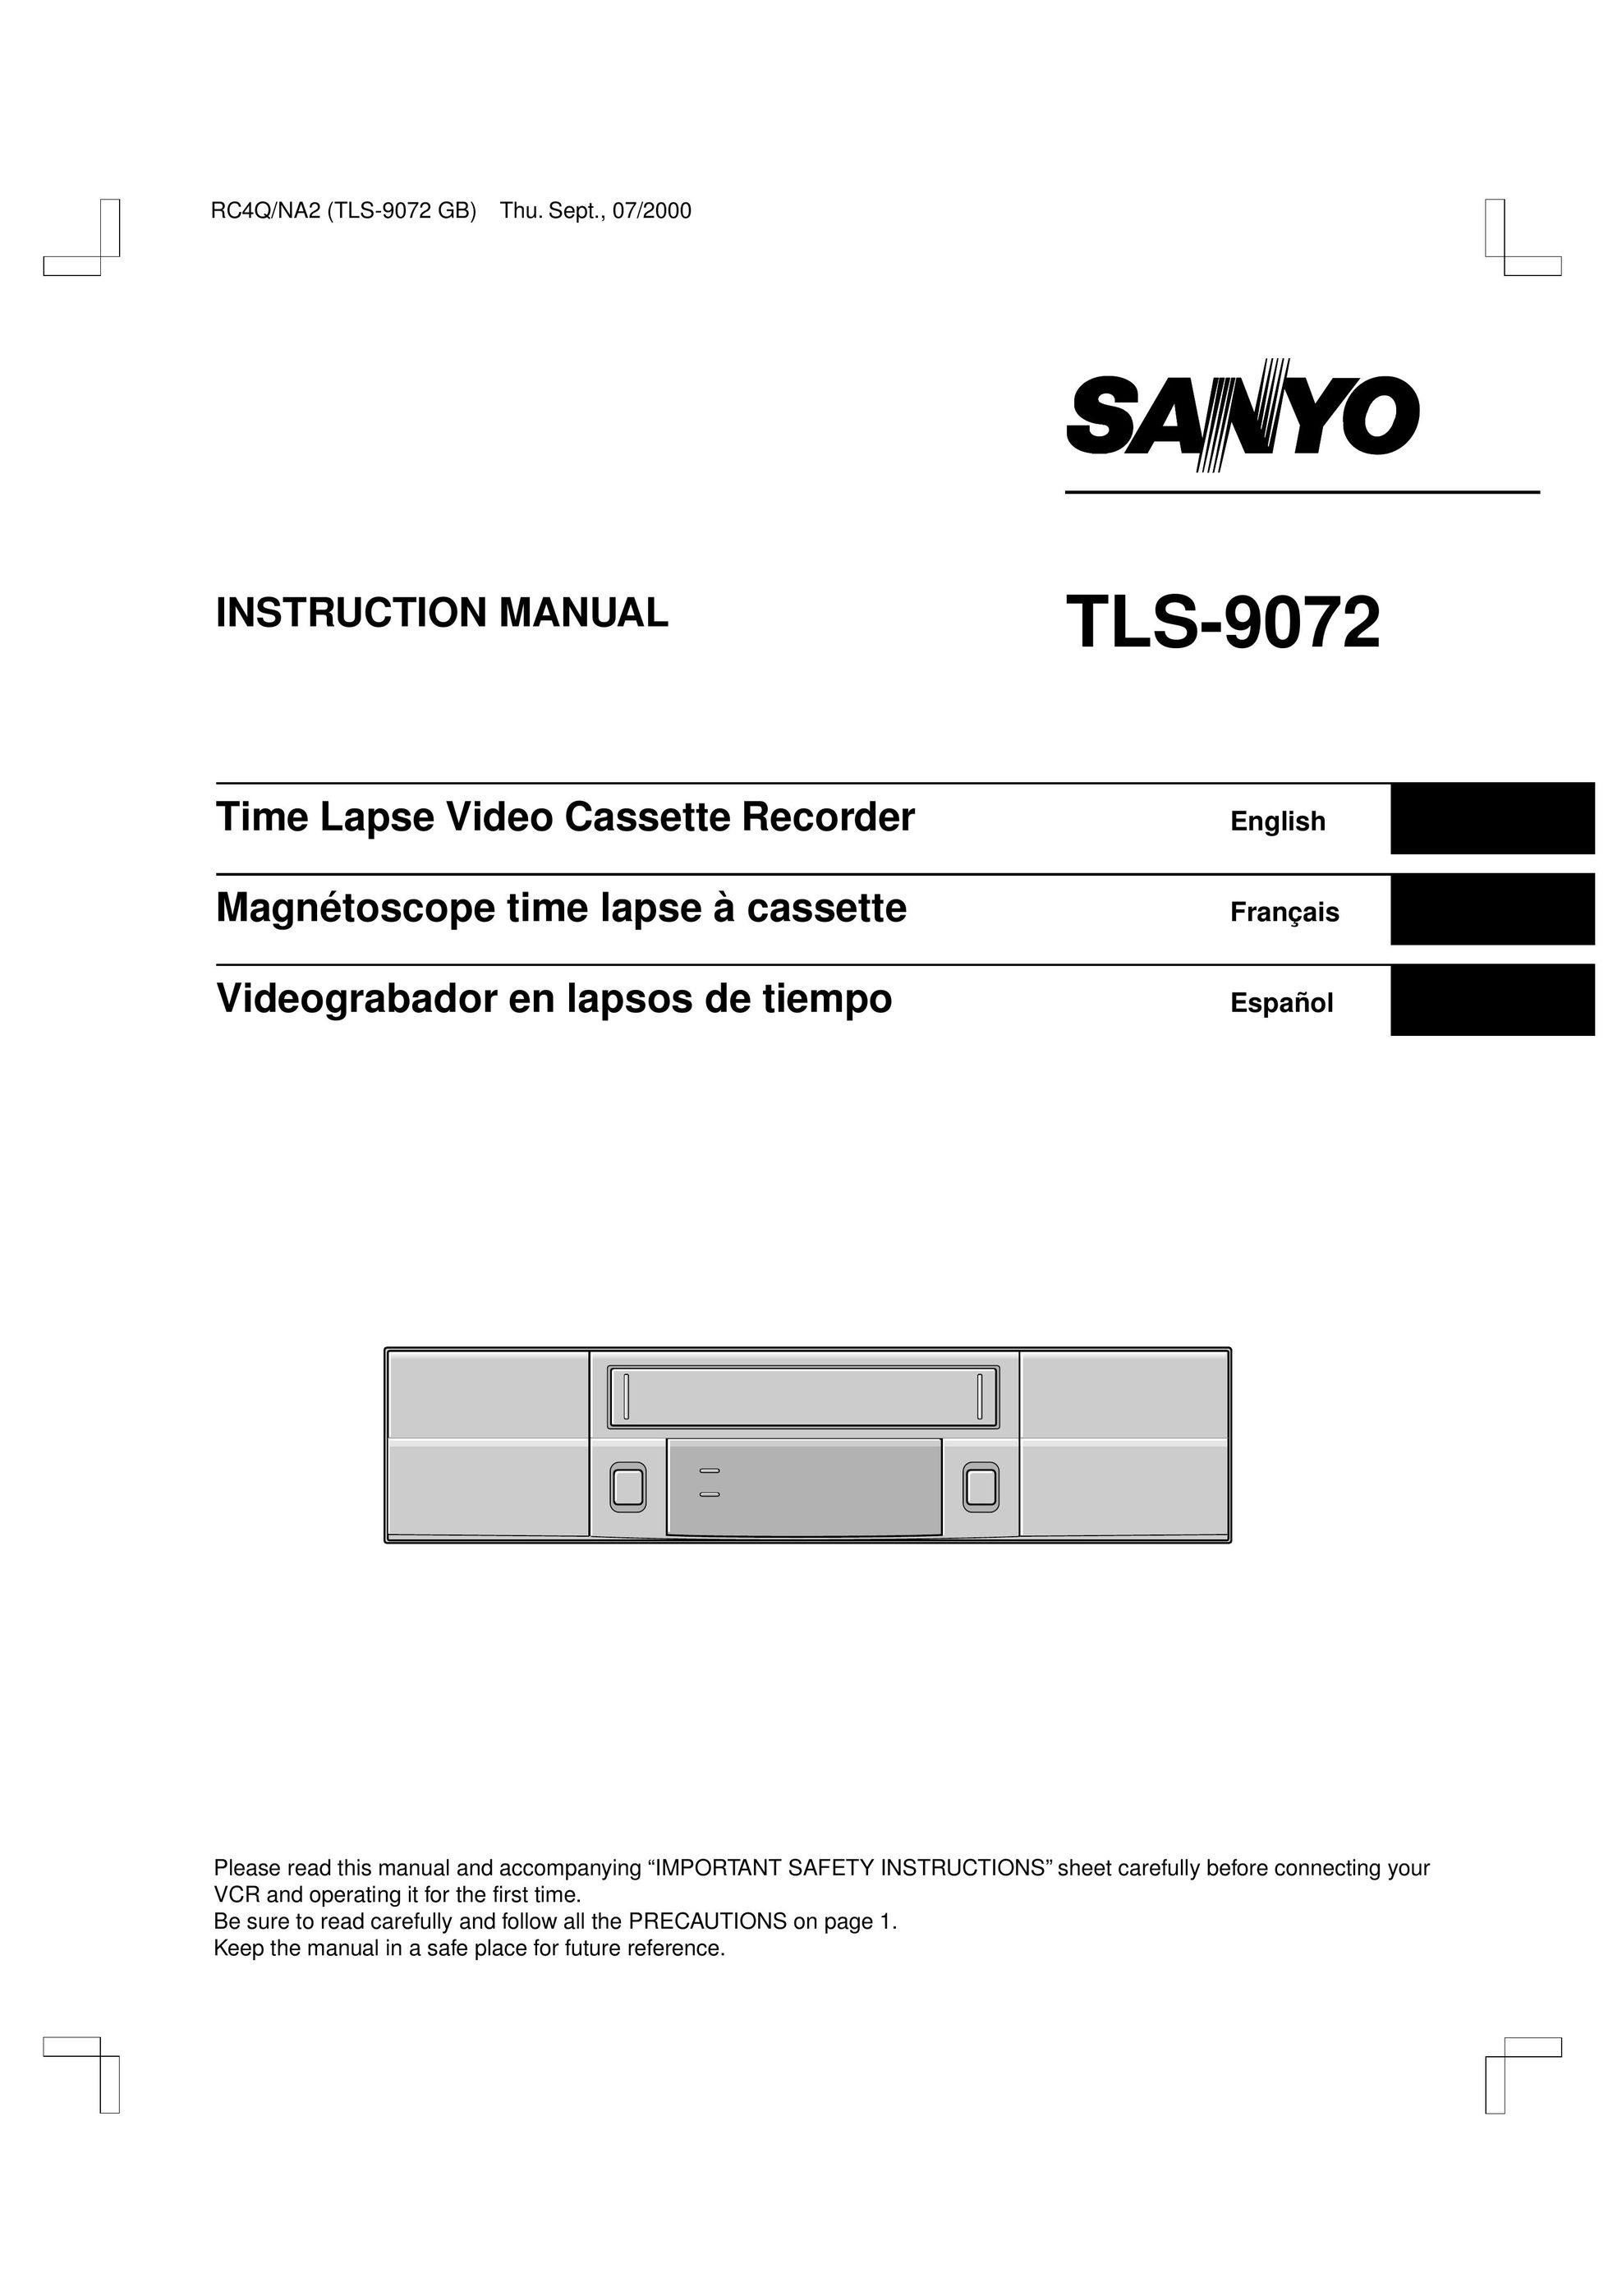 Sanyo TLS-9072 VCR User Manual